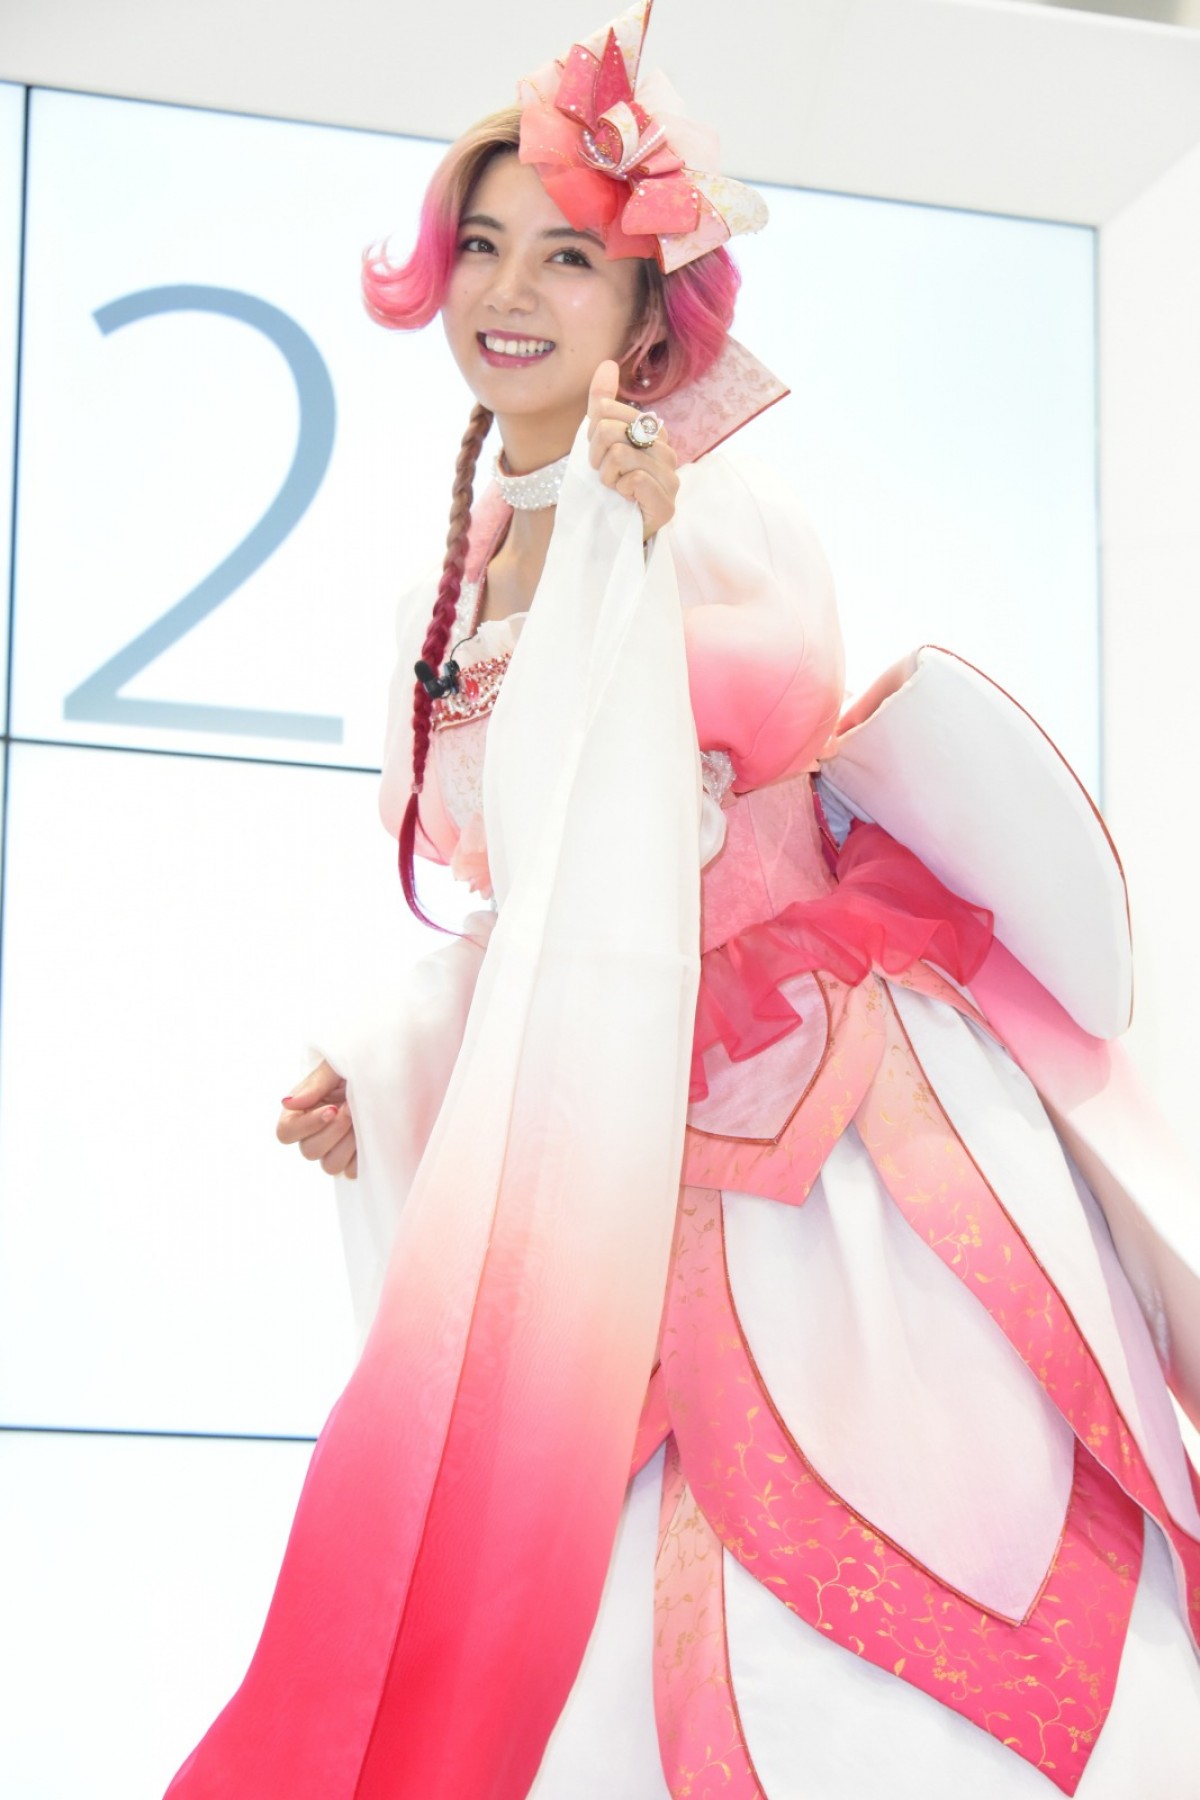 池田エライザ、“親指姫”姿をイベント初披露「スゴく楽しみにしていた」